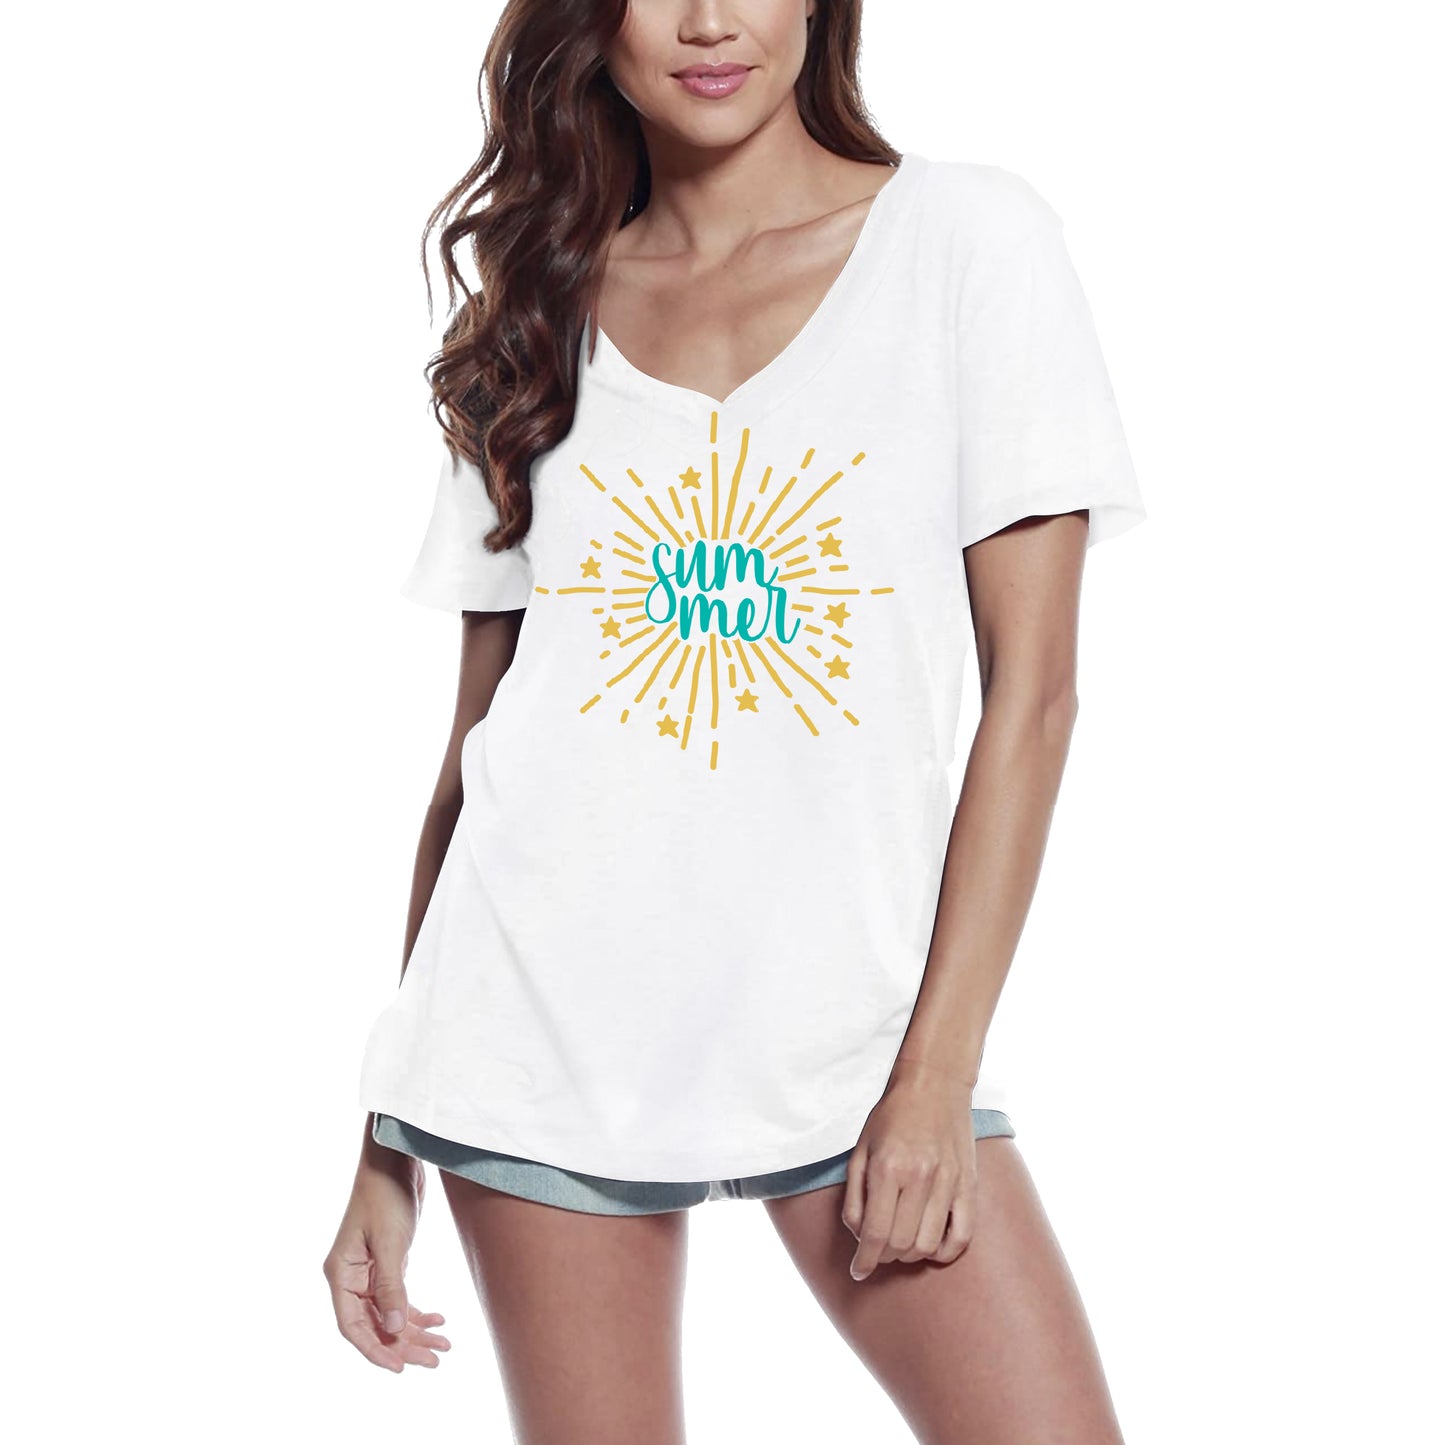 ULTRABASIC Women's T-Shirt Summer Sun - Short Sleeve Tee Shirt Tops